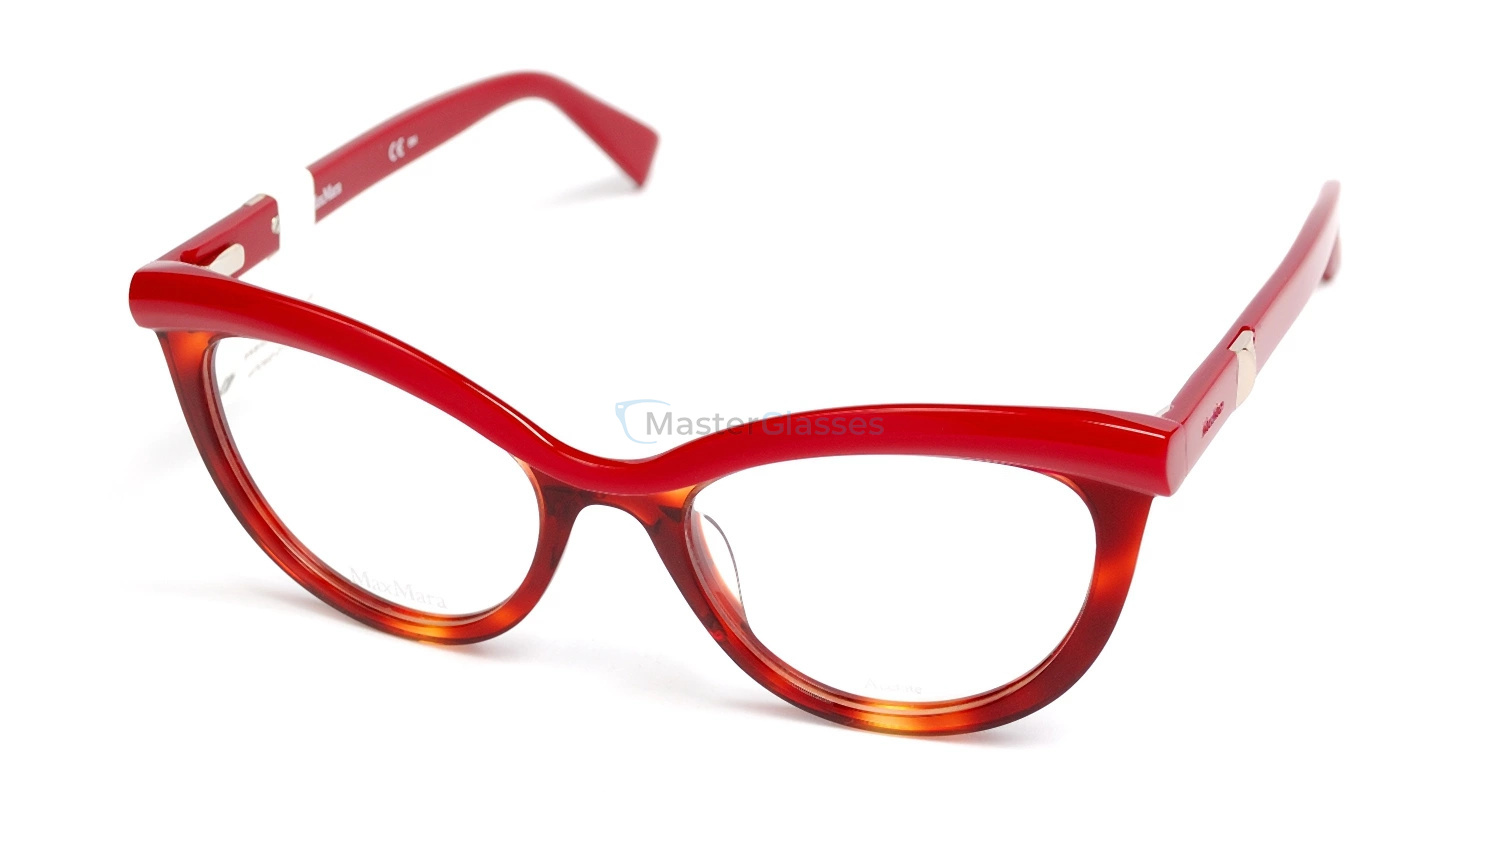 Купить очки женские на озон. Оправа очков для зрения. Оптические очки. Очки с красной оправой для зрения. Яркие оправы для очков женские.